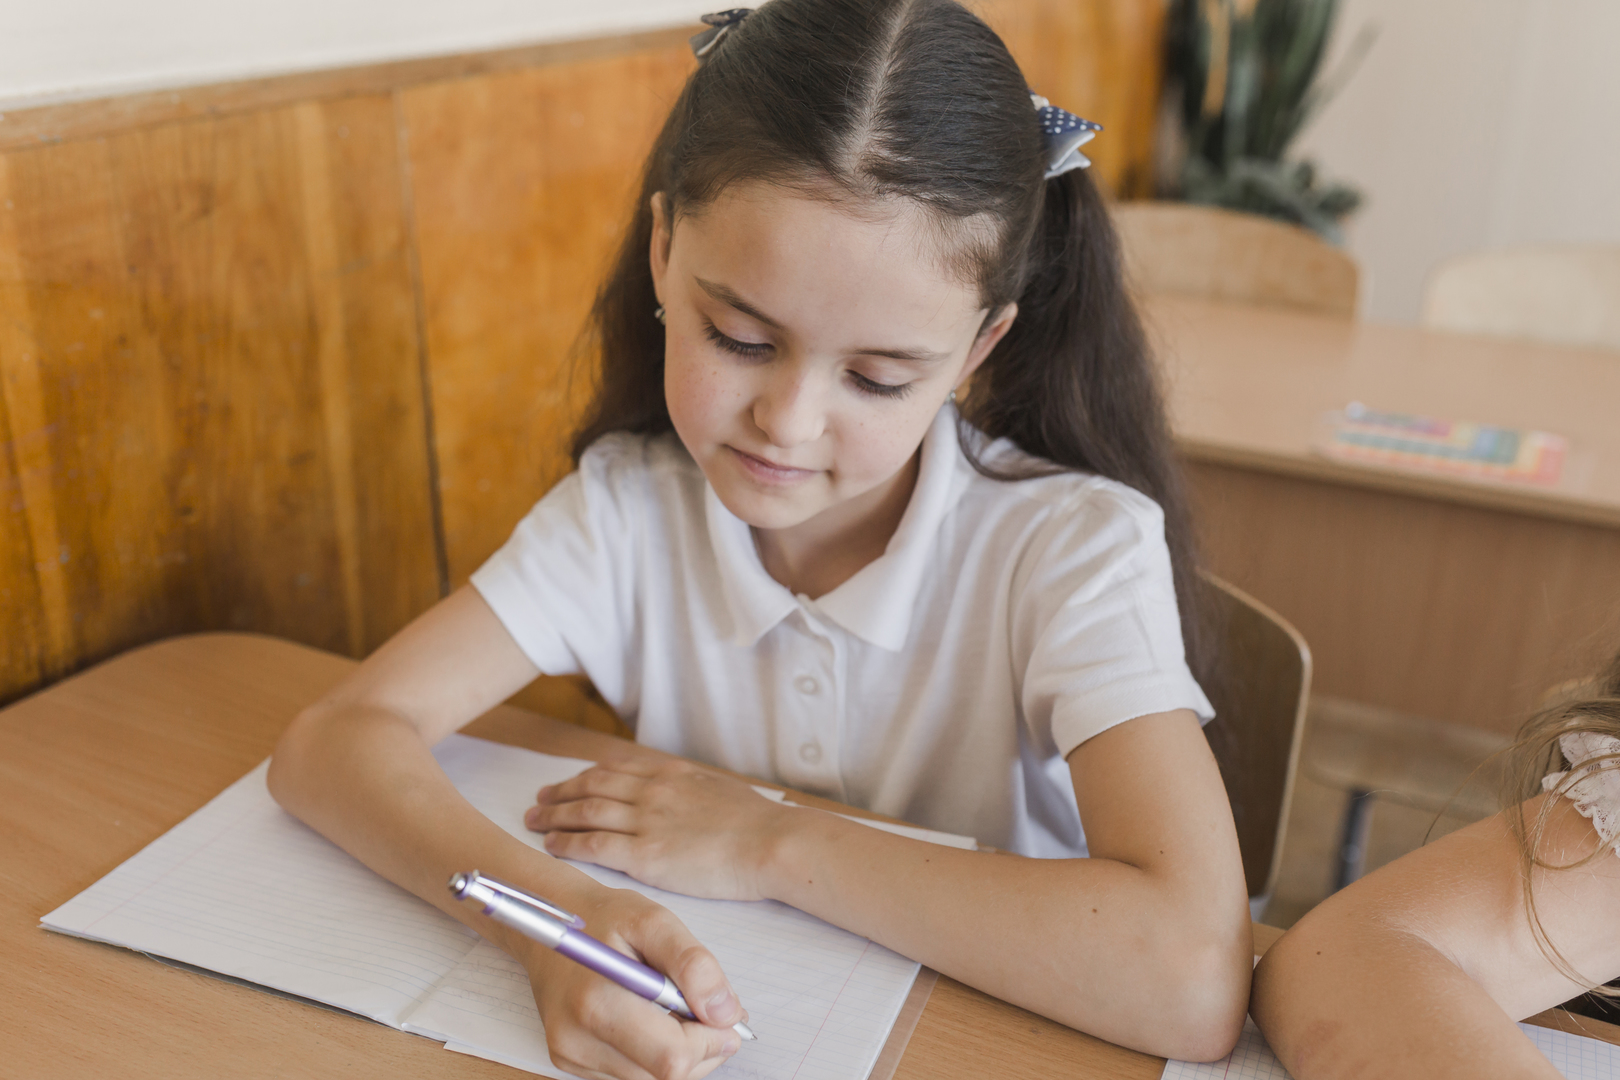 Младший учился также. Девочка делает уроки. Девушка делает уроки. Фото где девочка что то пишет в школе.